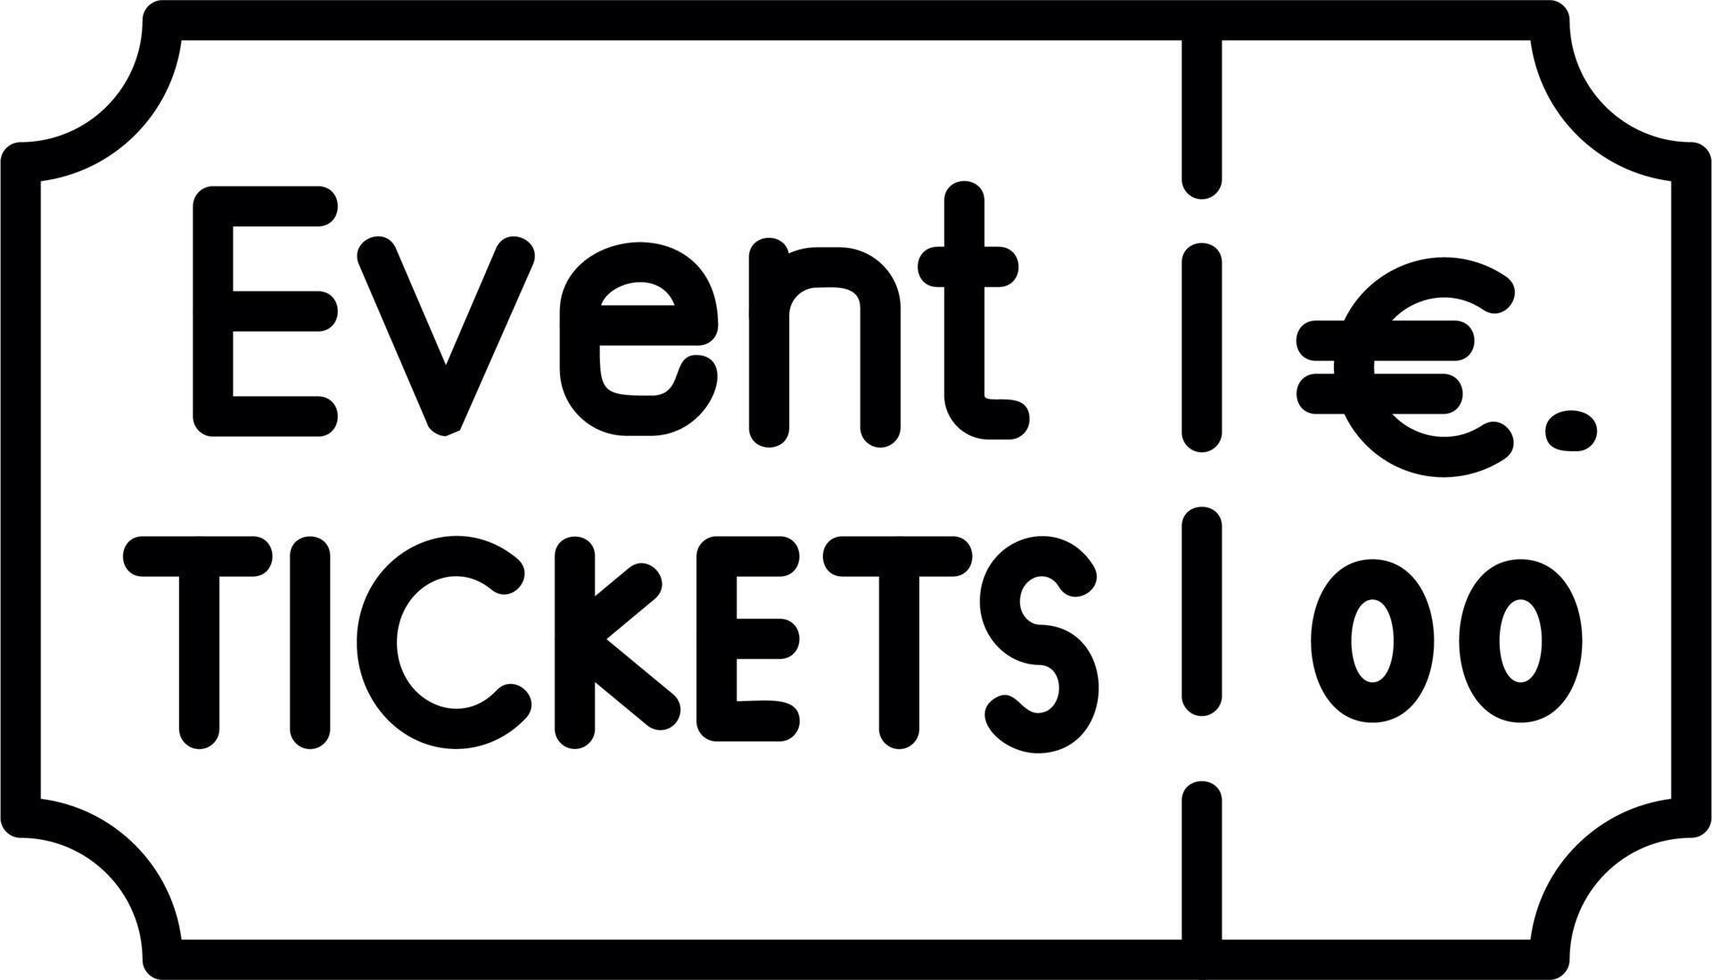 Veranstaltung Fahrkarte Vektor Symbol